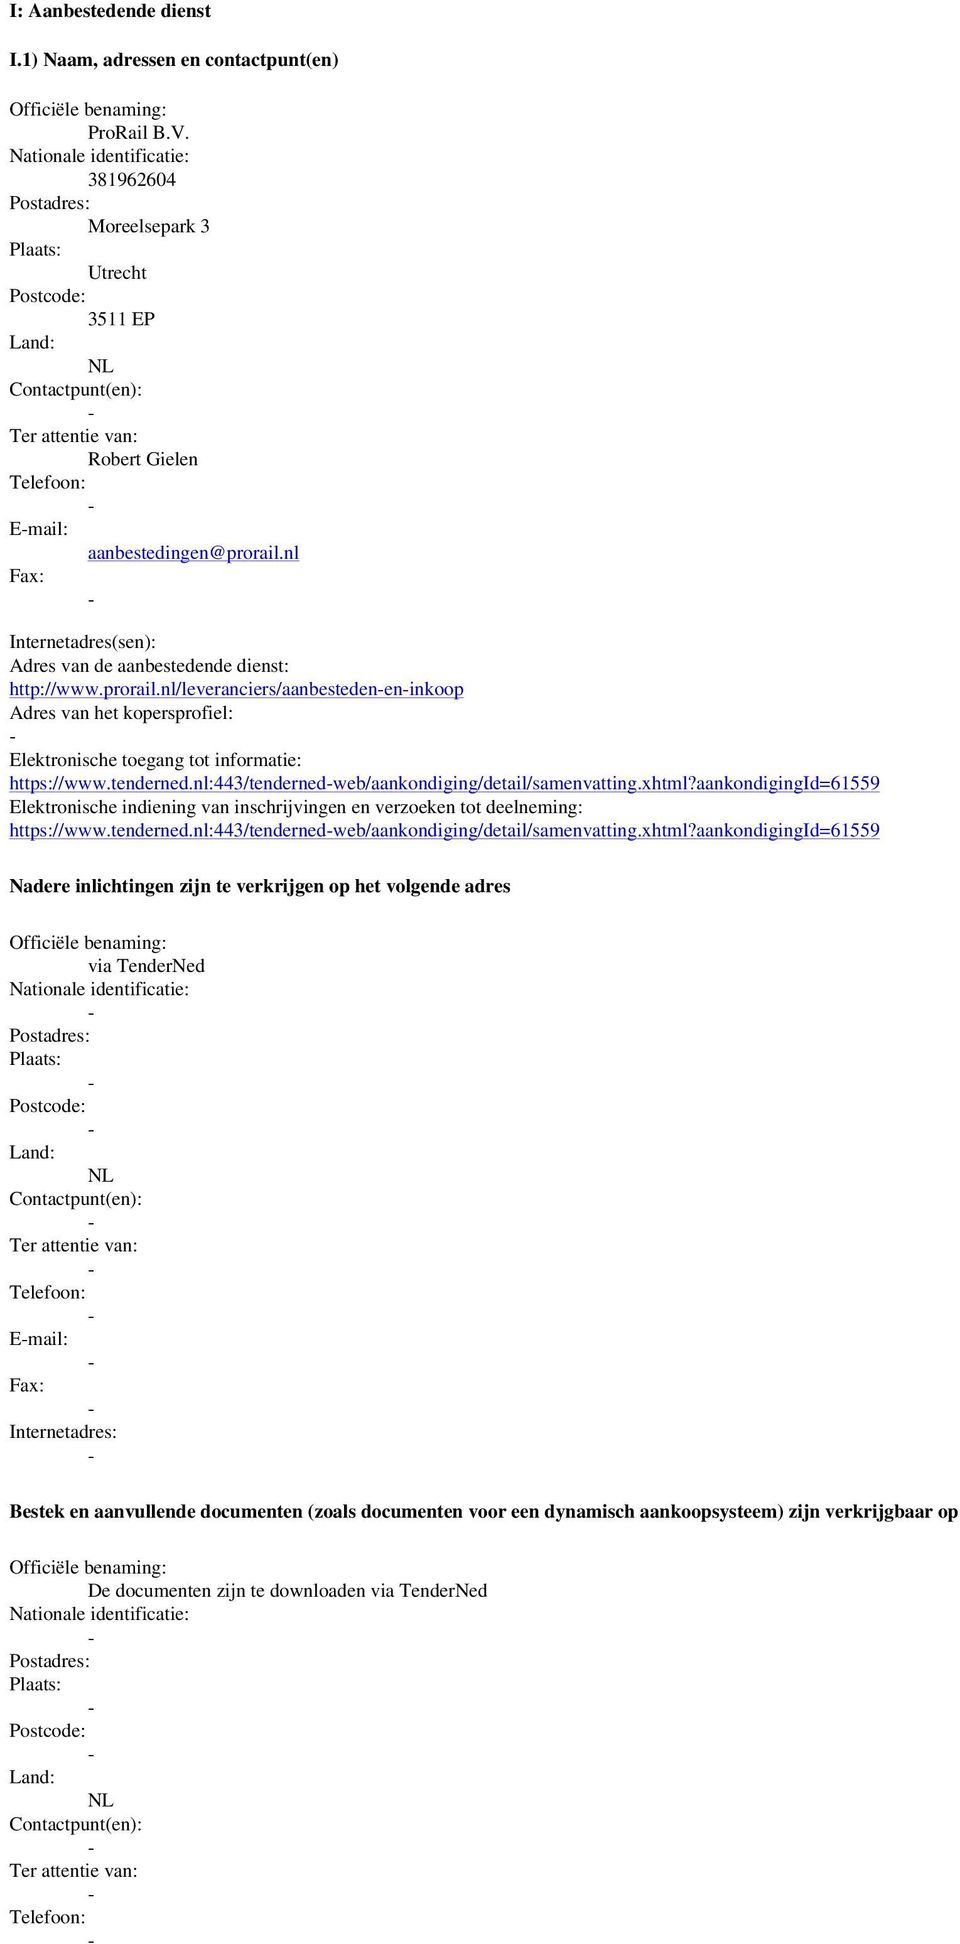 tenderned.nl:443/tendernedweb/aankondiging/detail/samenvatting.xhtml?